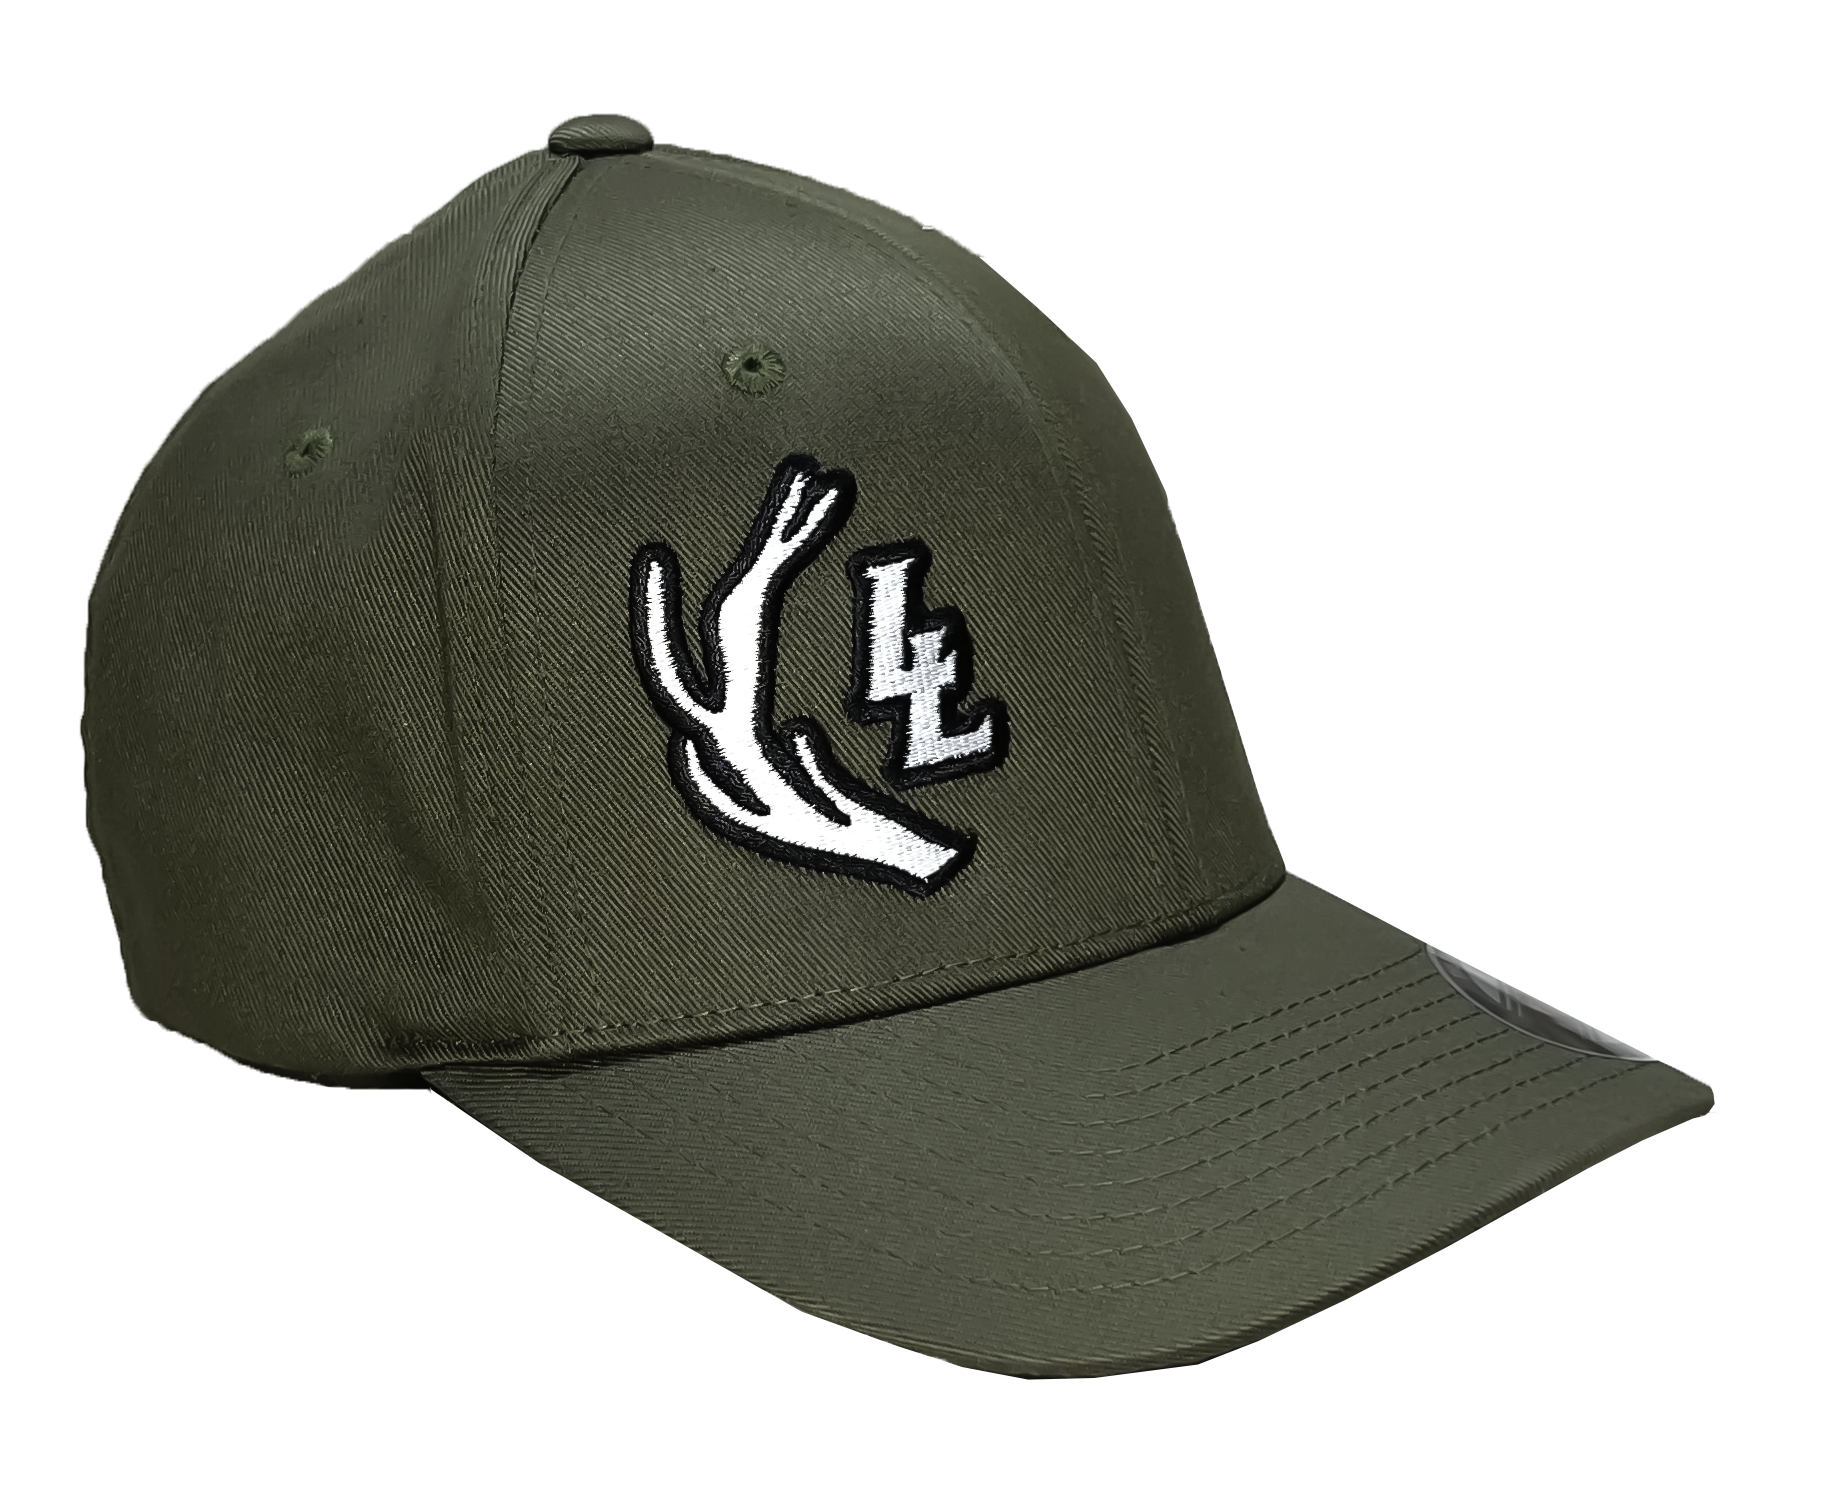 OD Green Lundy Life Flexfit Hat